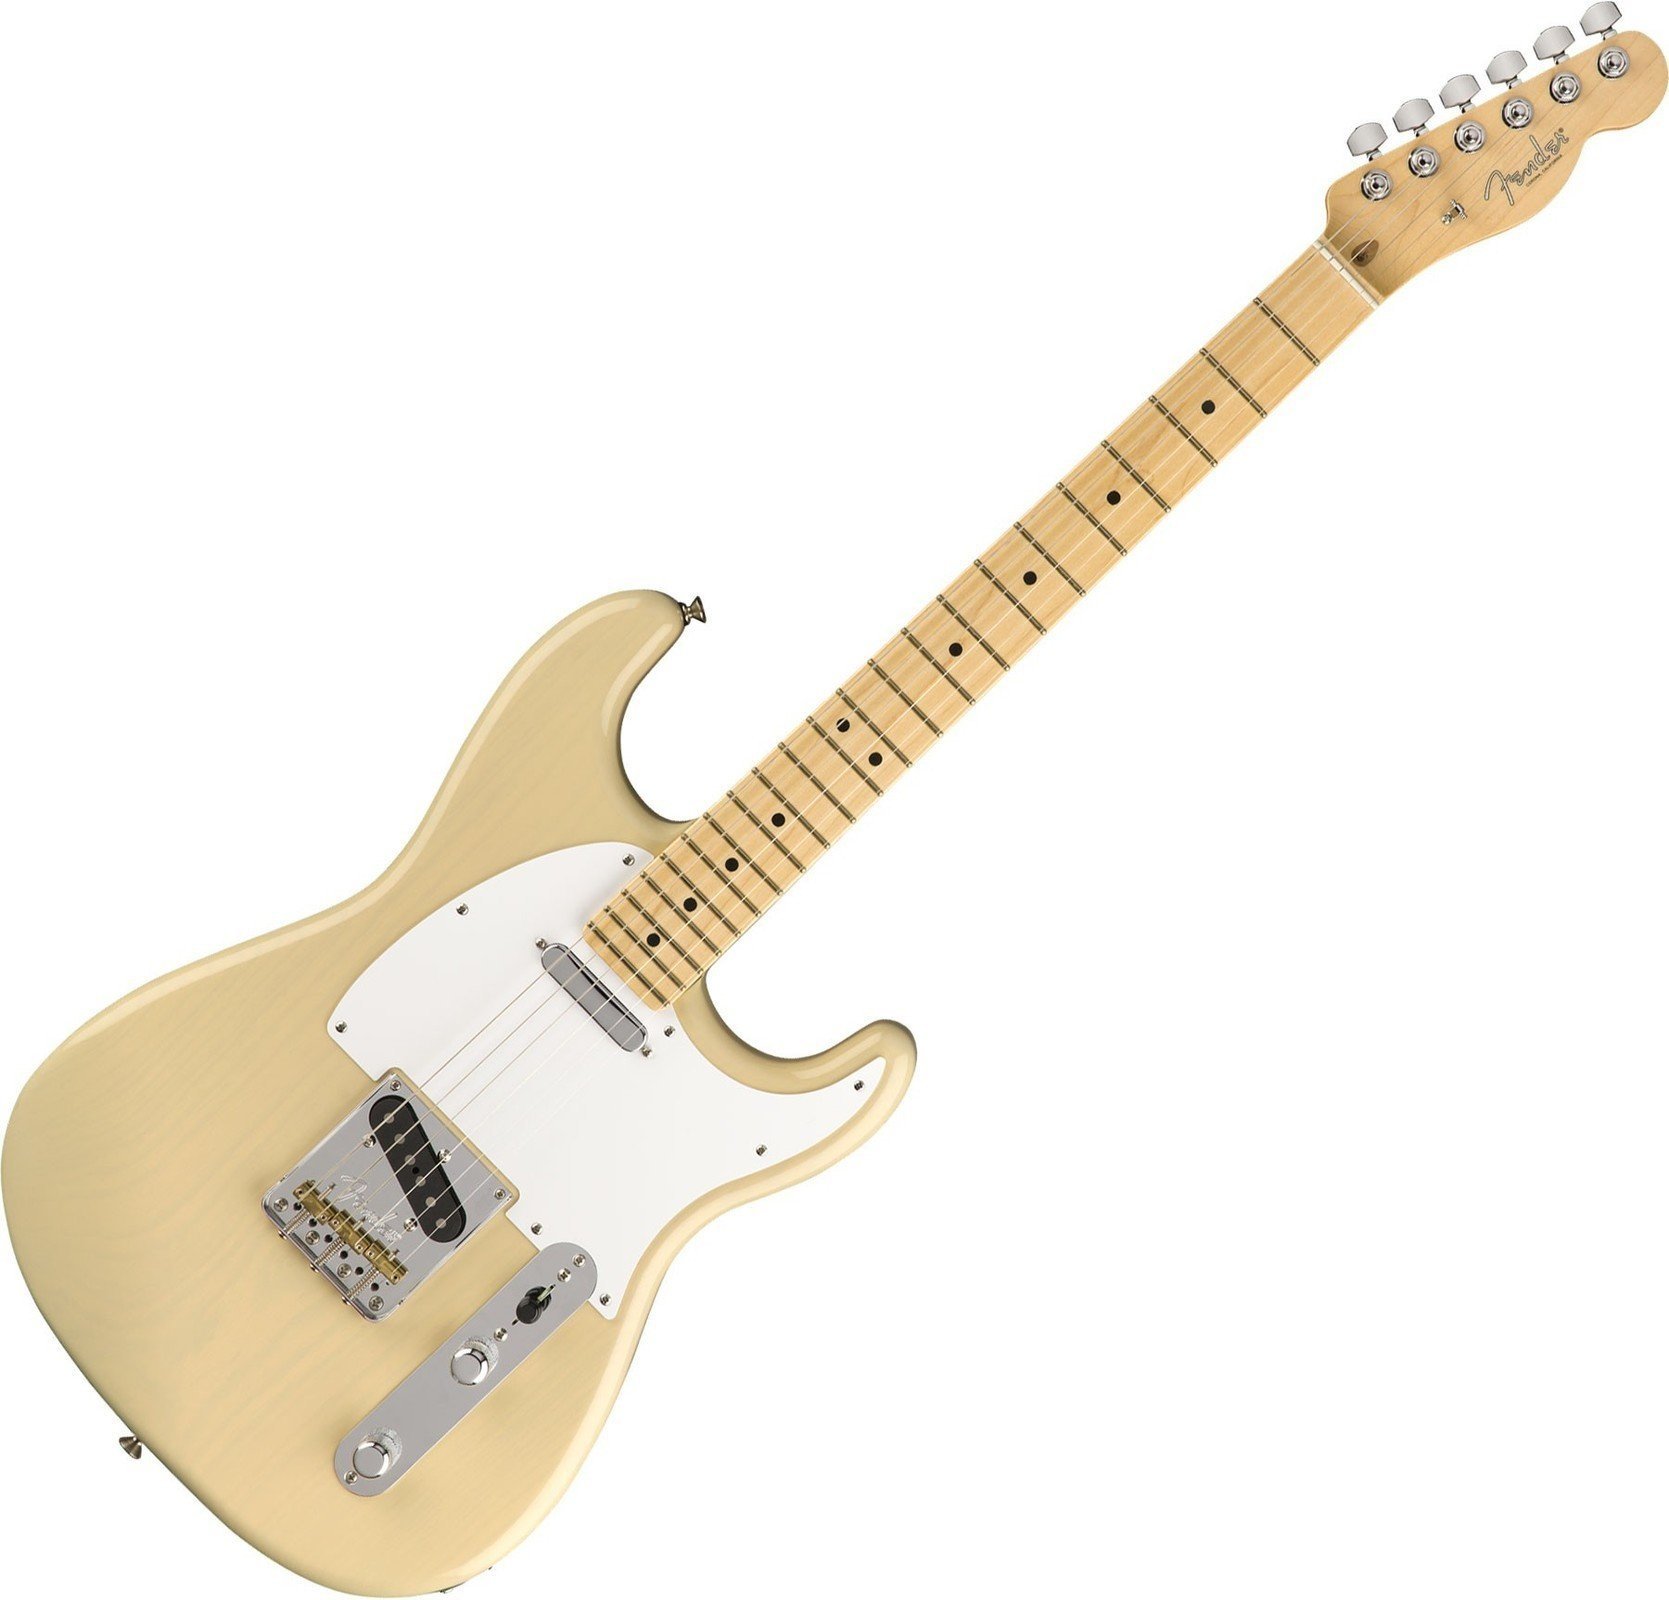 Electric guitar Fender Limited Whiteguard Stratocaster MN Vintage Blonde